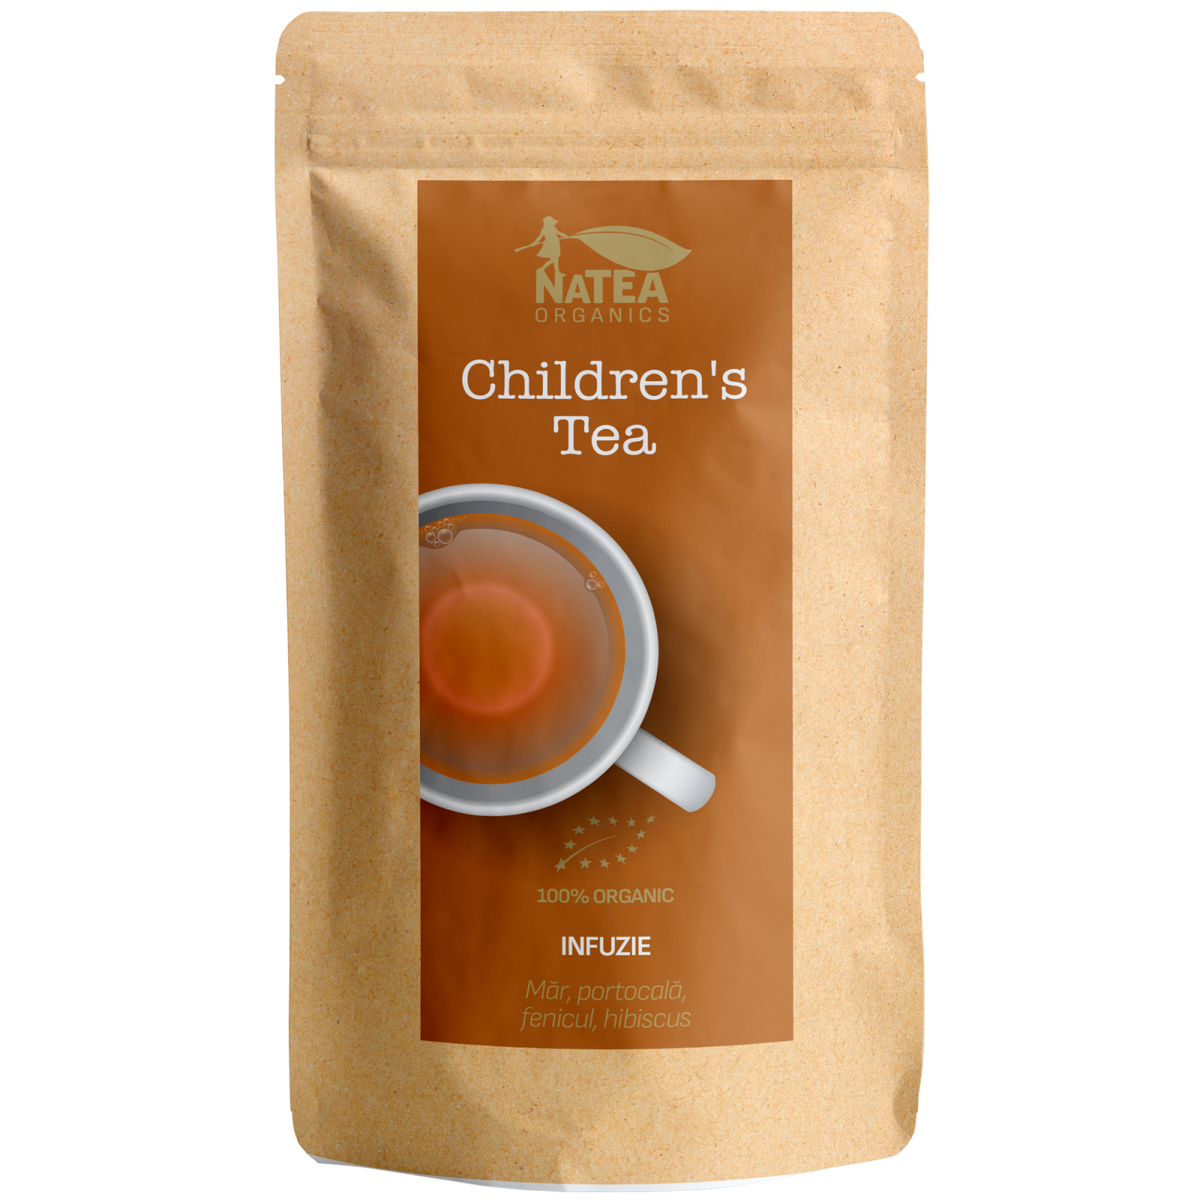 Ceai de mar, fenicul, hibiscus, capsuni - Children's Tea